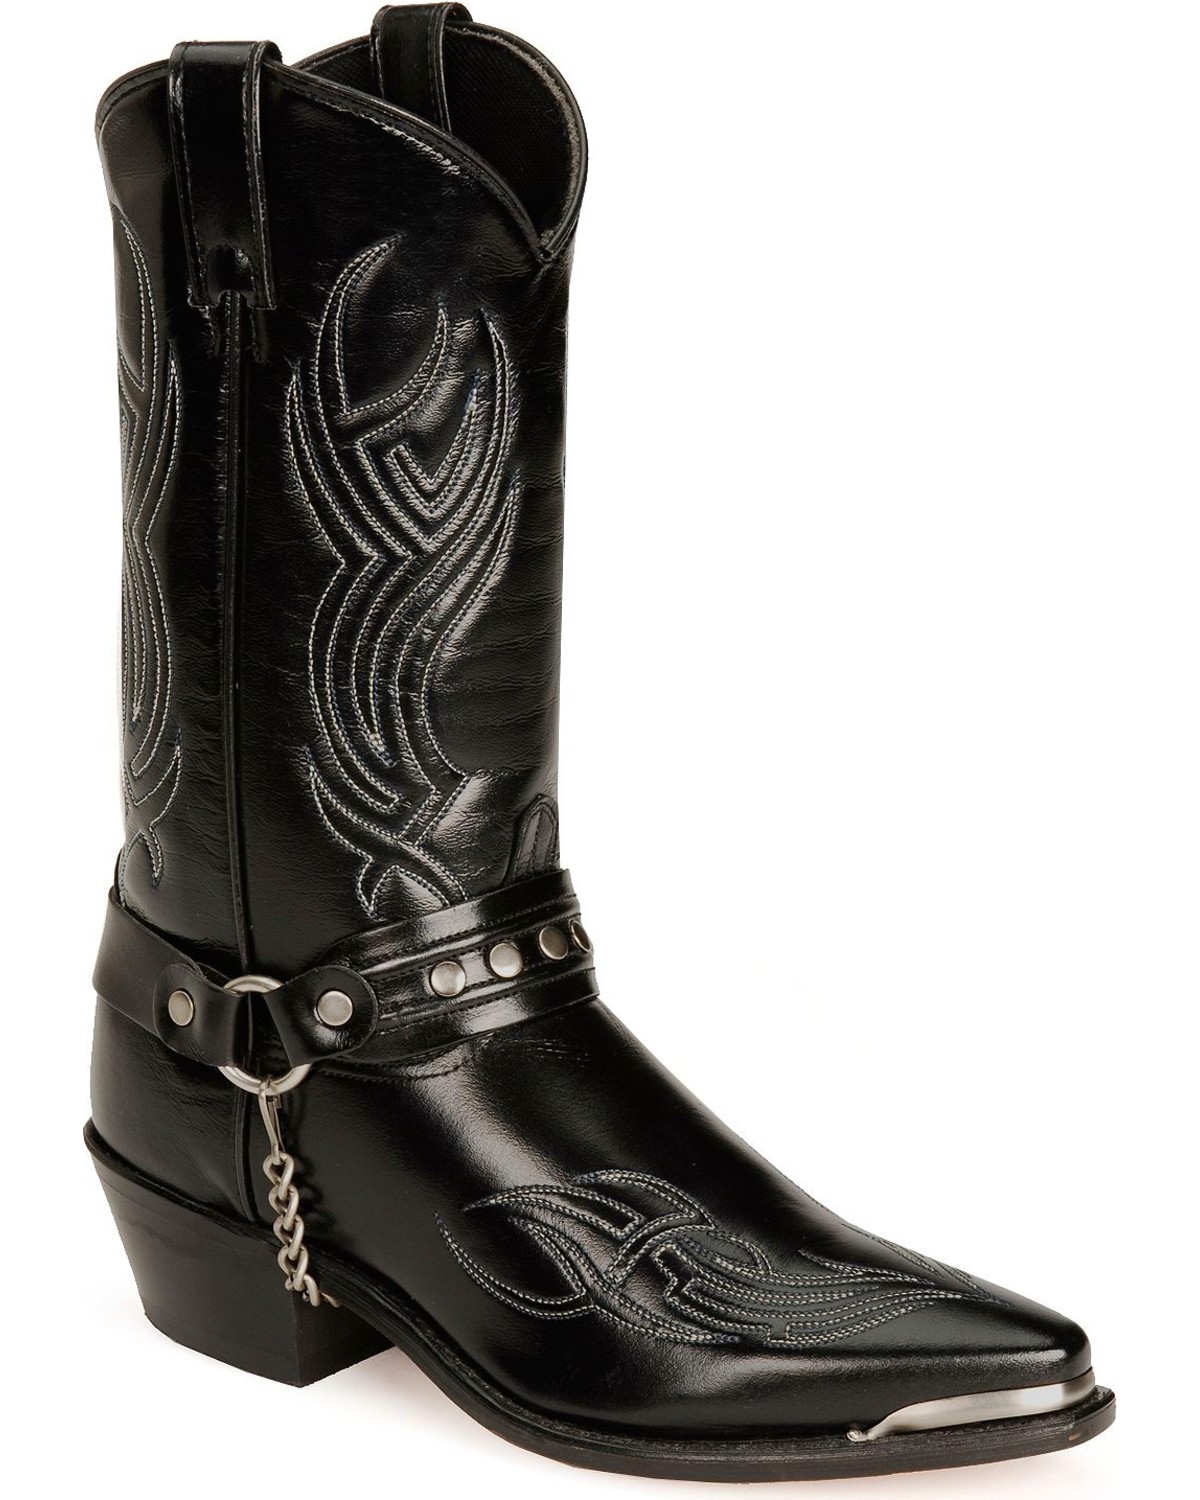 Sage Boots by Abilene Men's 12" Harness